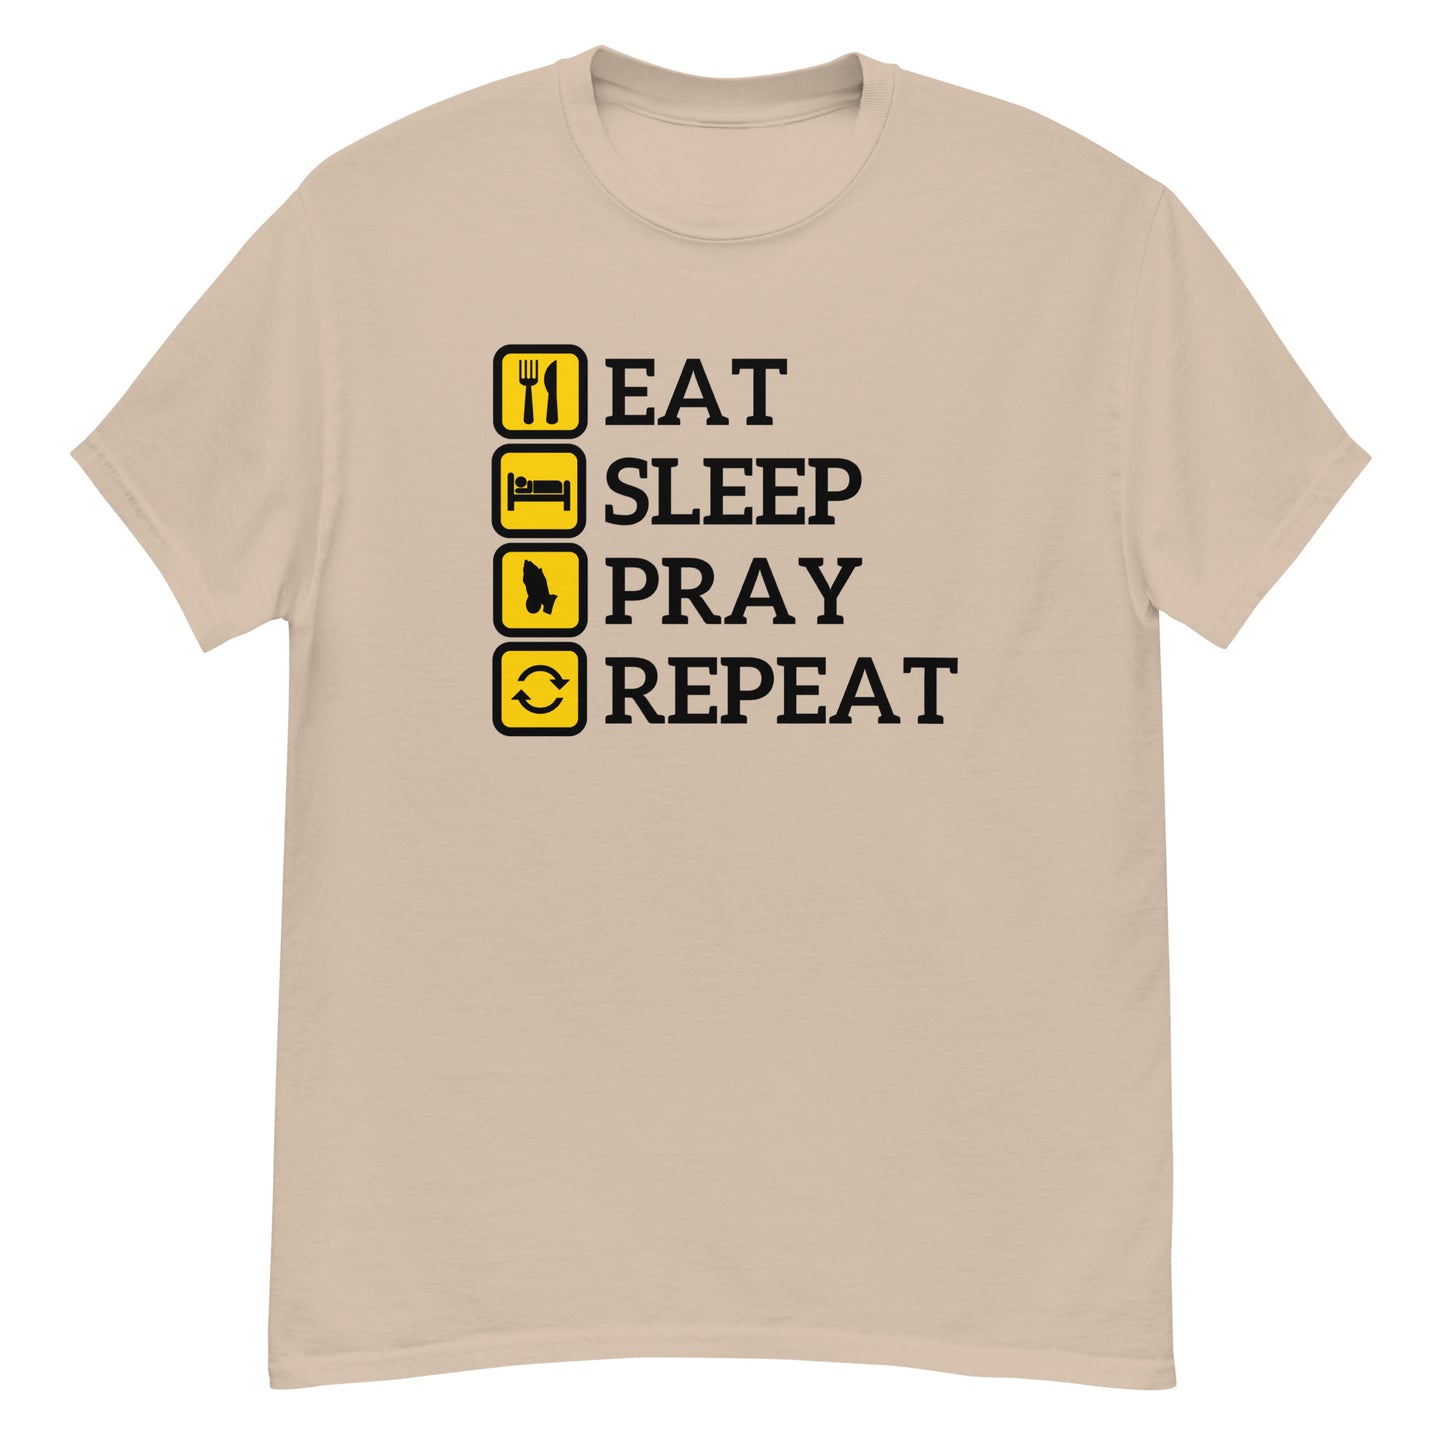 Eat, Sleep, Pray, Repeat Unisex Tee